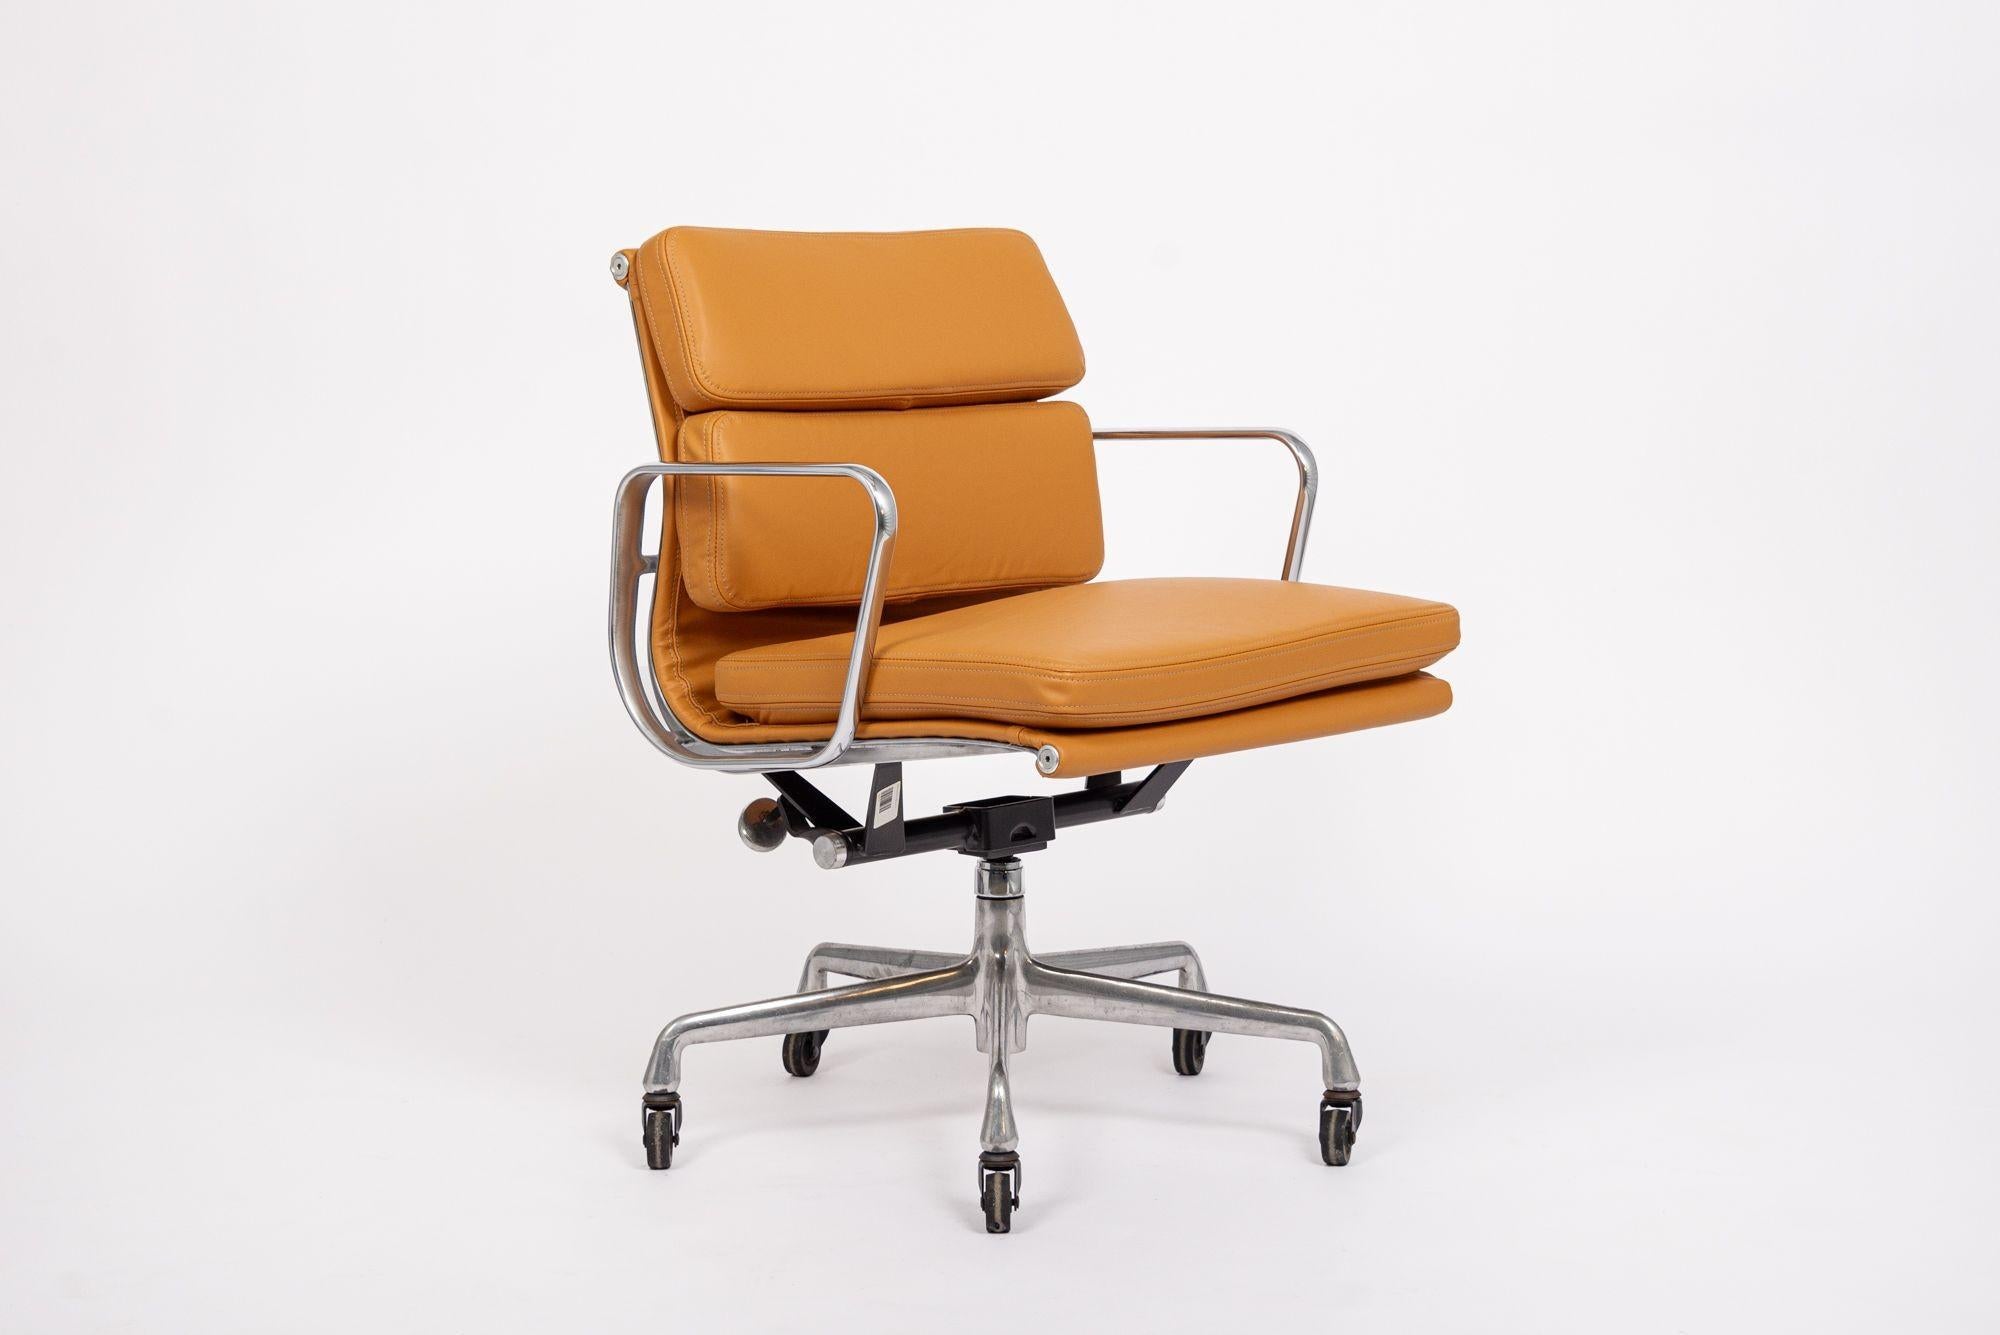 Cette authentique chaise de bureau Eames for Herman Miller Soft Pad Management Height en cuir brun orange moutarde de la Collection Aluminium Group a été fabriquée dans les années 2000. Cette chaise de bureau classique et moderne du milieu du siècle